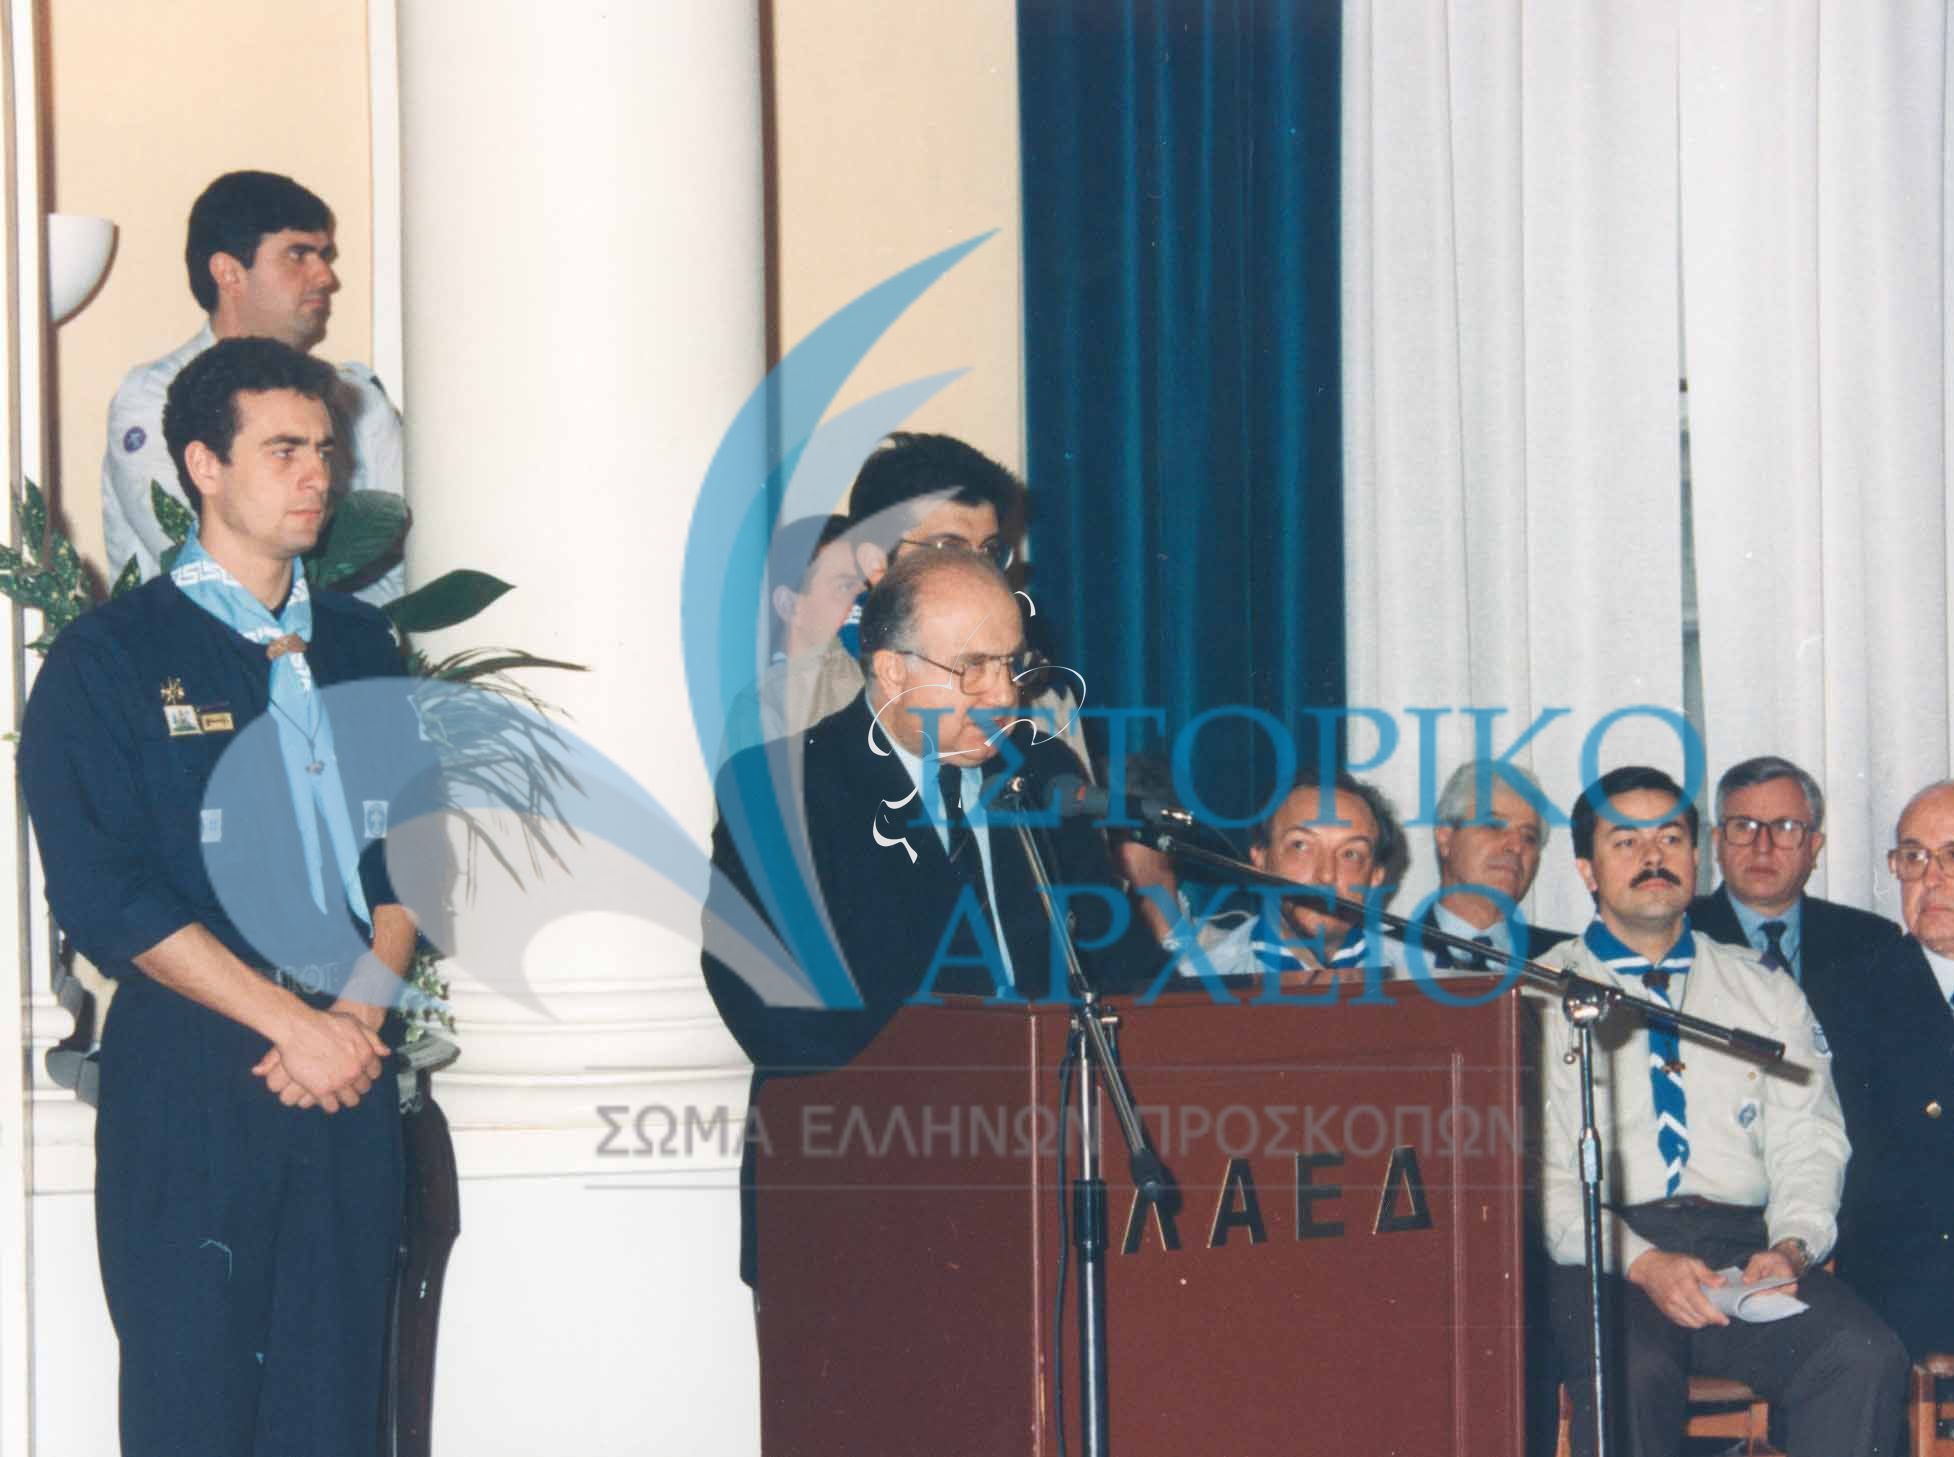 Ο Πρόεδρος ΔΣ ΣΕΠ Ι. Τζεν σε πανηγυρική ομιλιά κατα την απονομή της αναγνώρισης "Πρόσκοπος Έθνους" το 1997 παρουσία του Προέδρου της Δημοκρατίας.